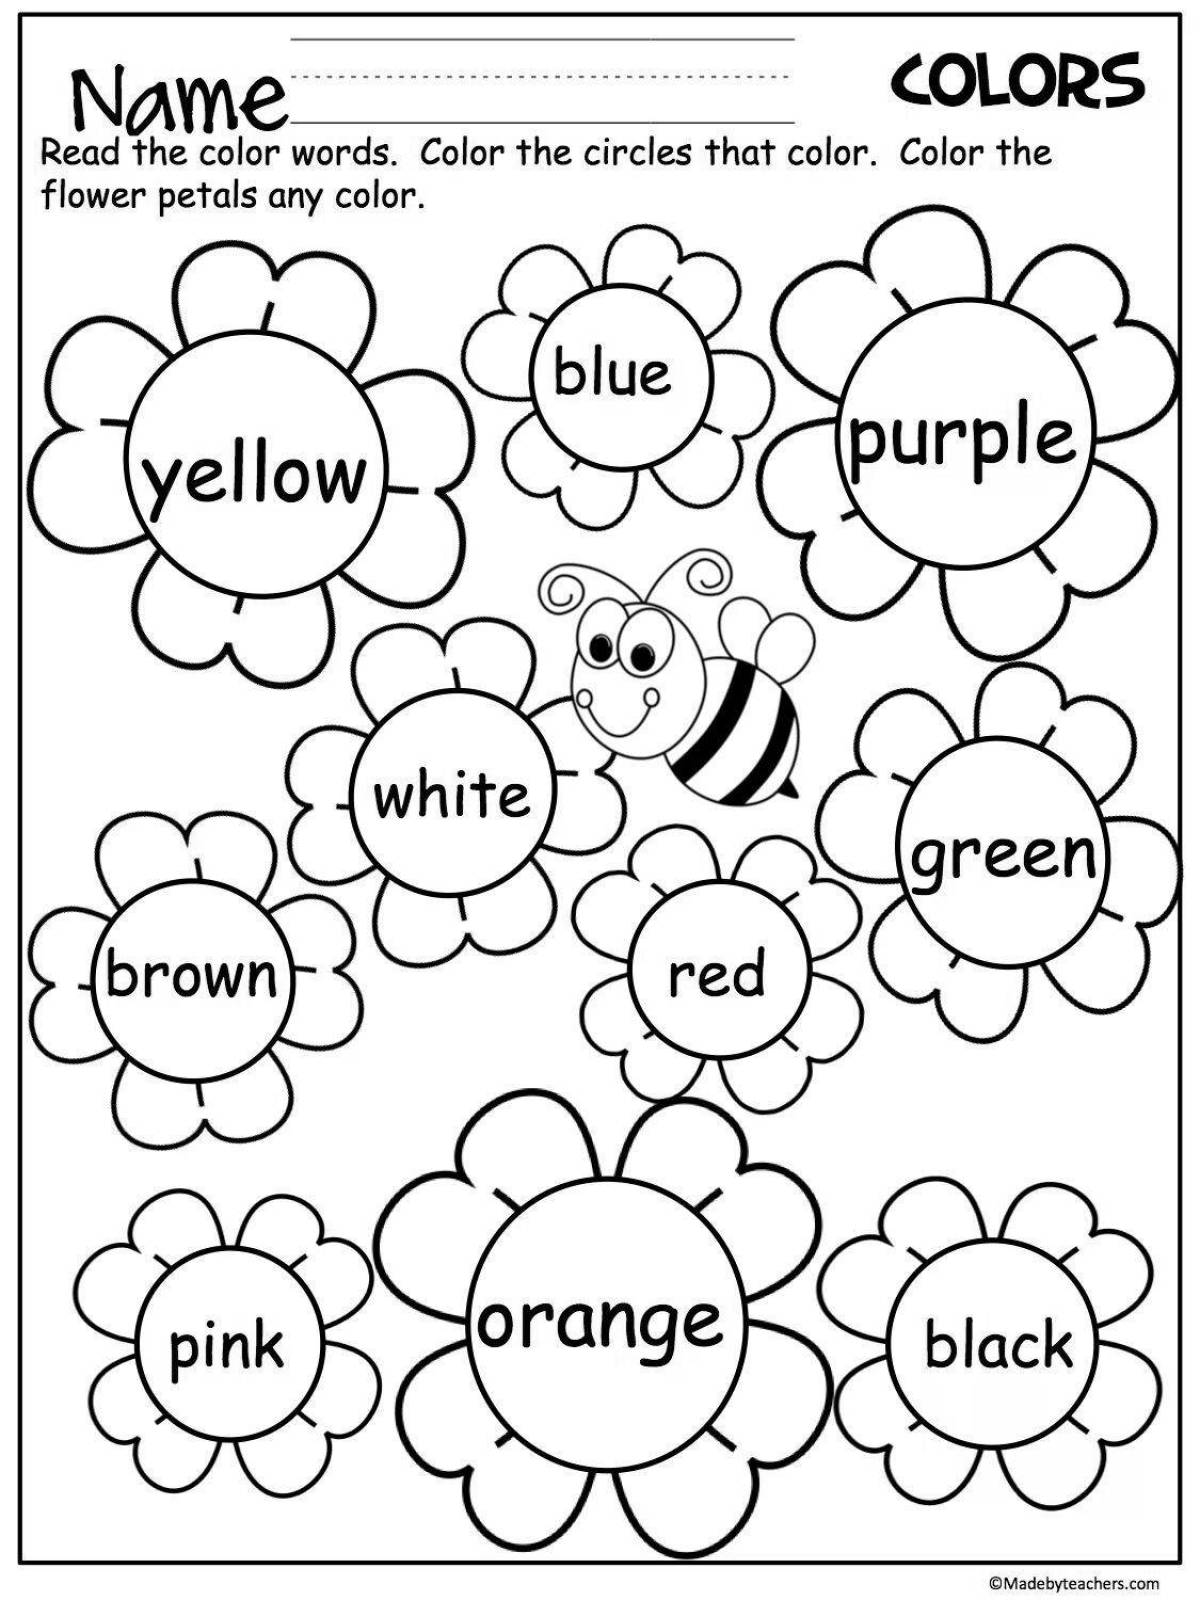 Яркие раскраски на английском языке для детей